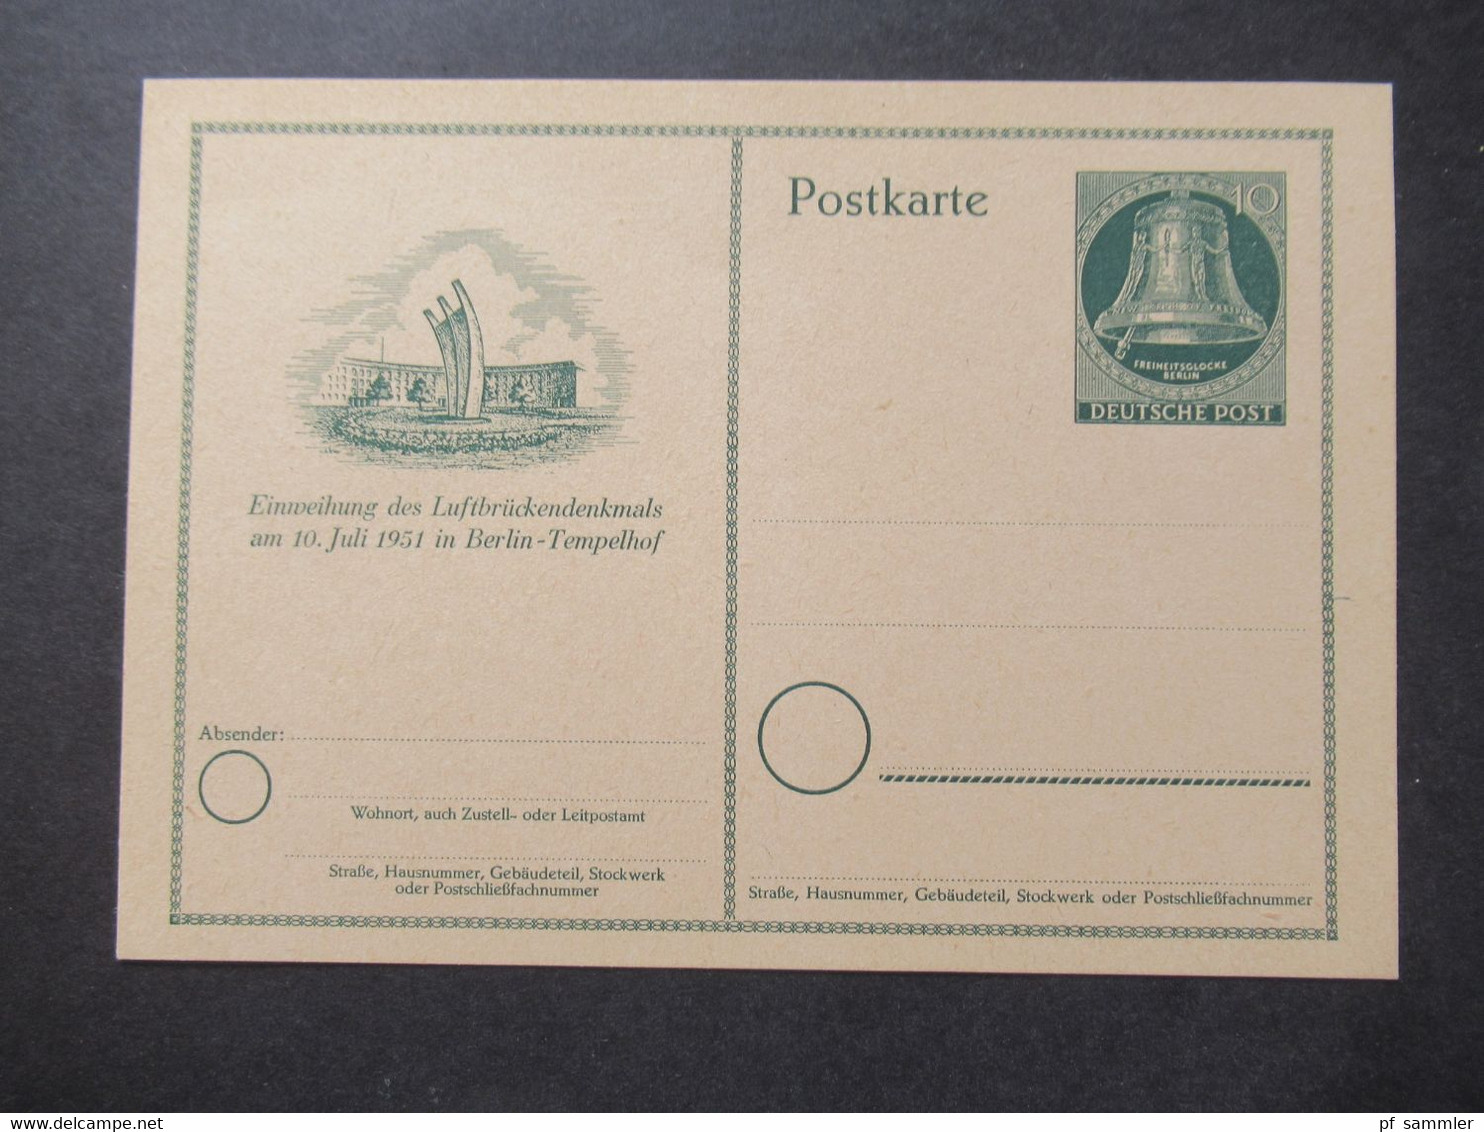 Berlin (West) 1951 Sonderpostkarte Einweihung Des Luftbrückendenkmals Ganzsache P 24 Ungebraucht - Postcards - Mint